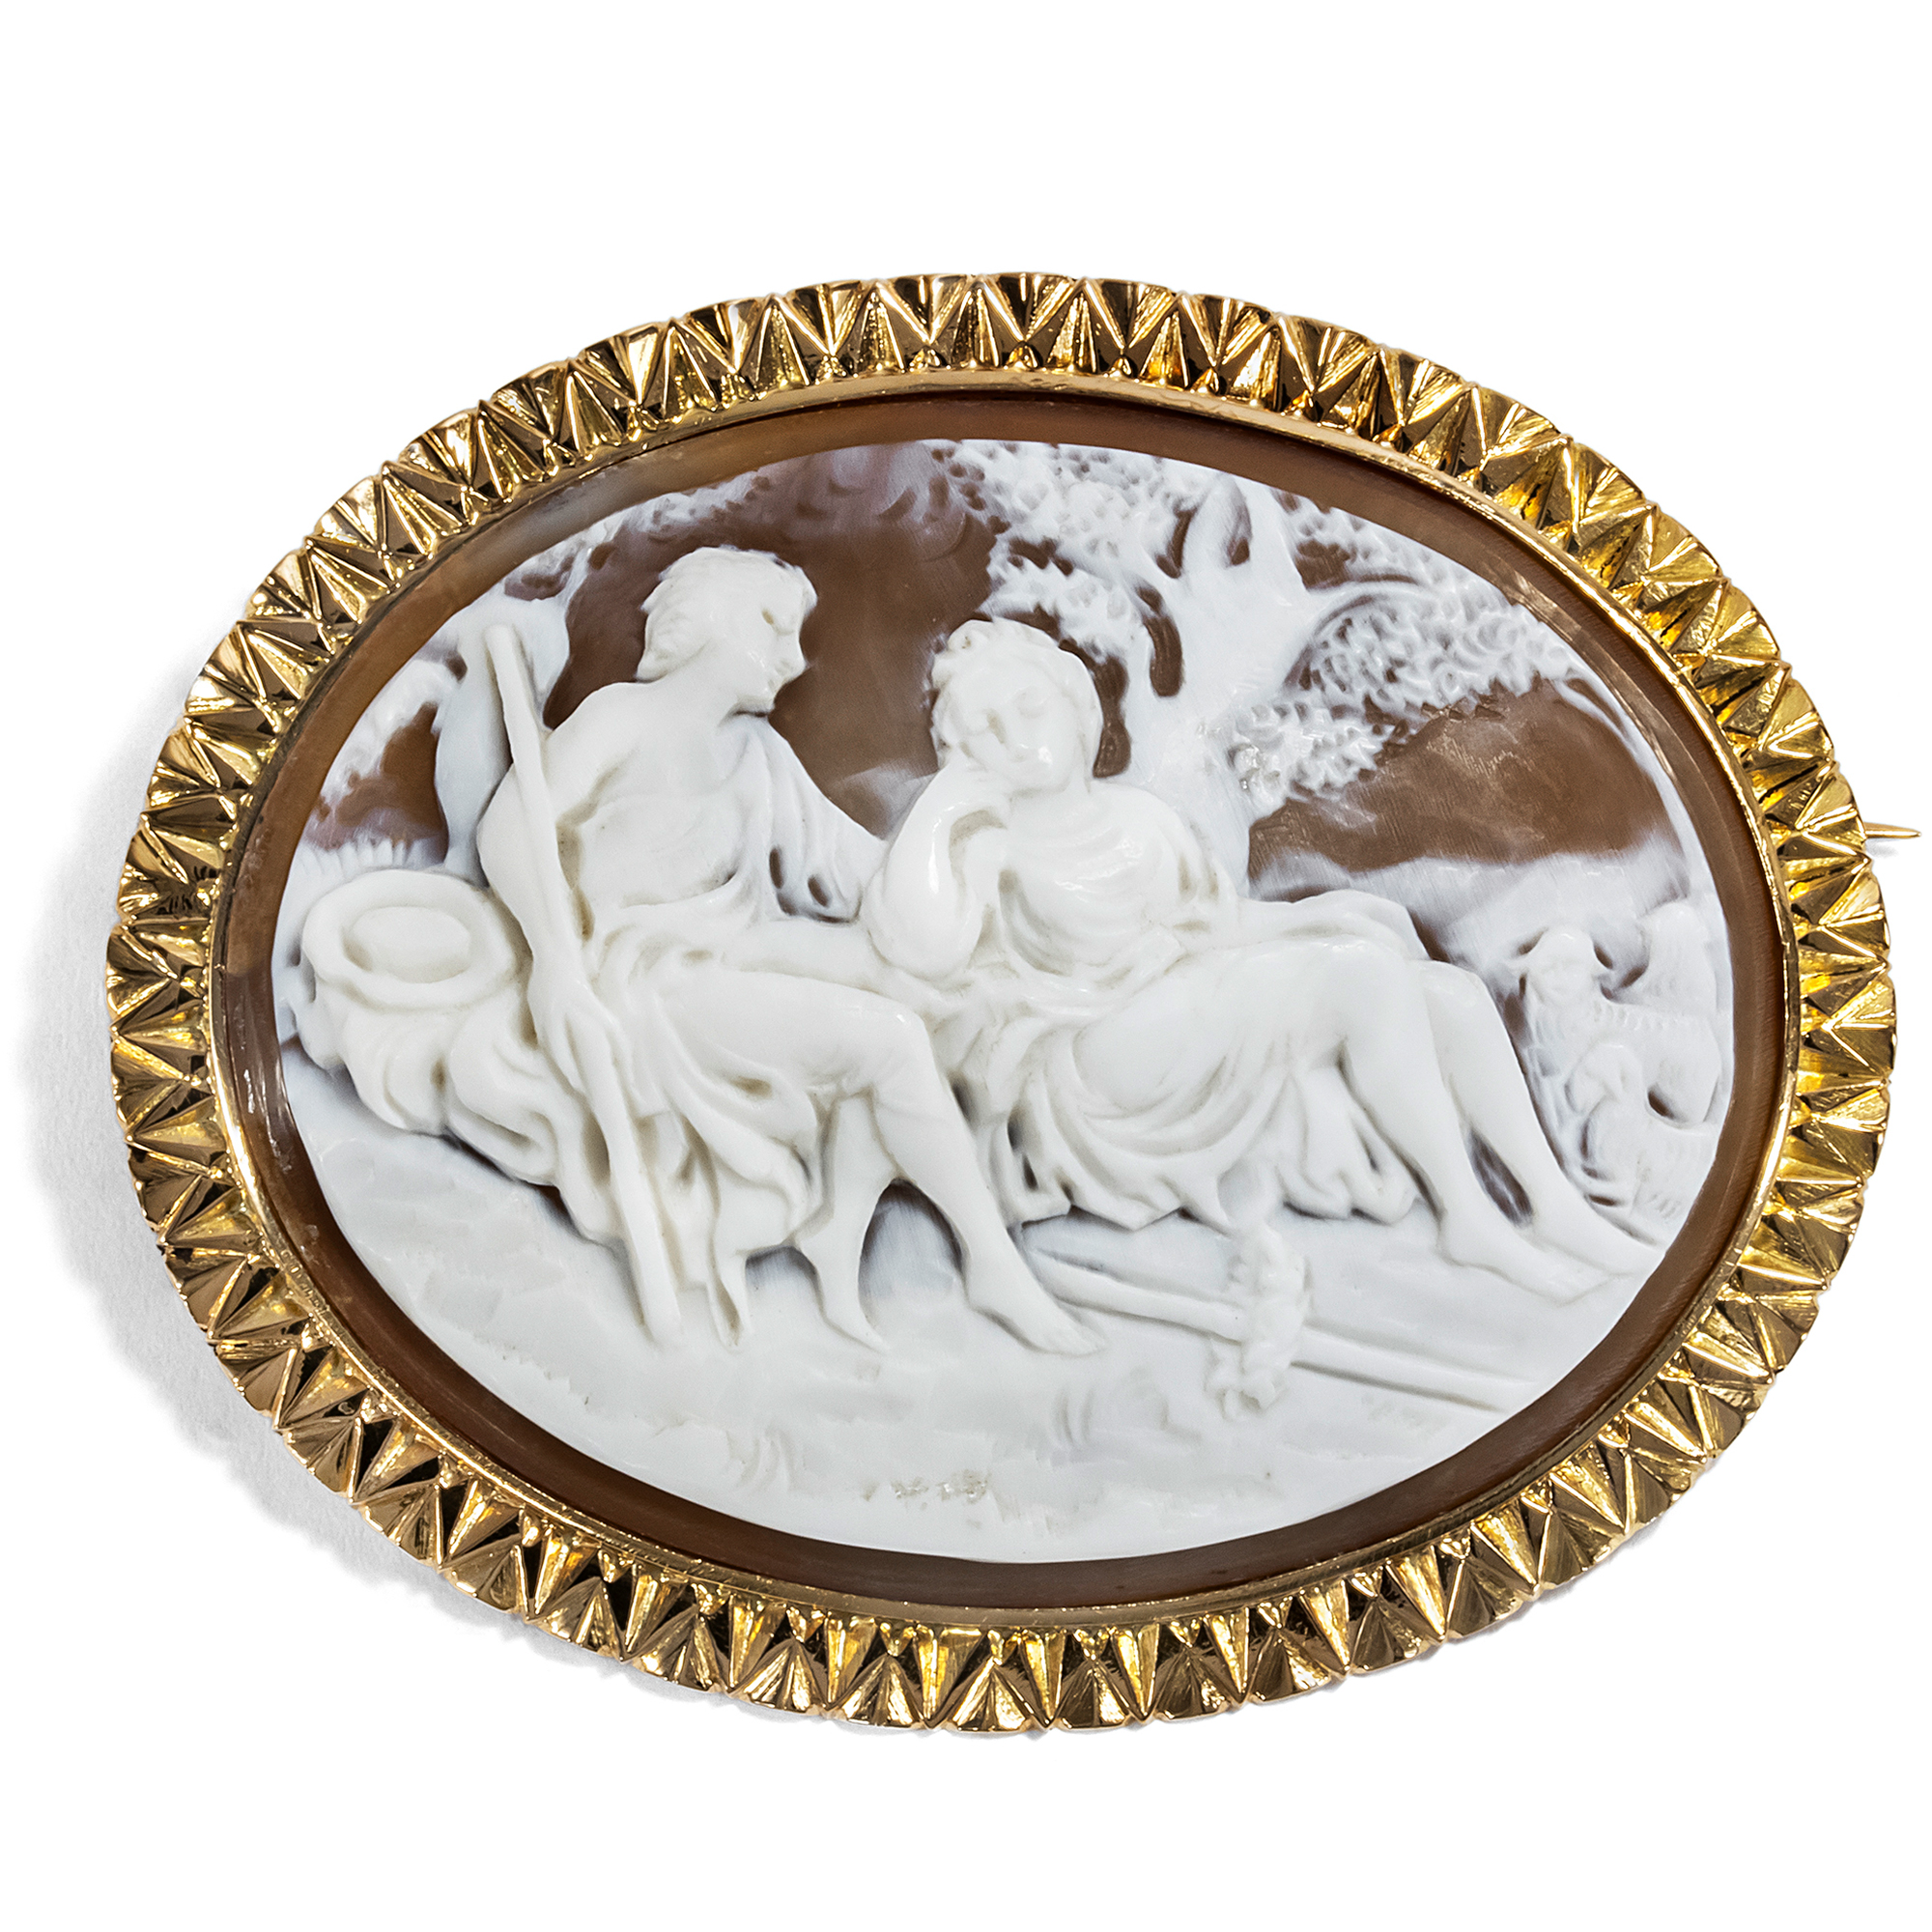 Bukolische Muschelgemme gefasst in Gold als Brosche, um 1875